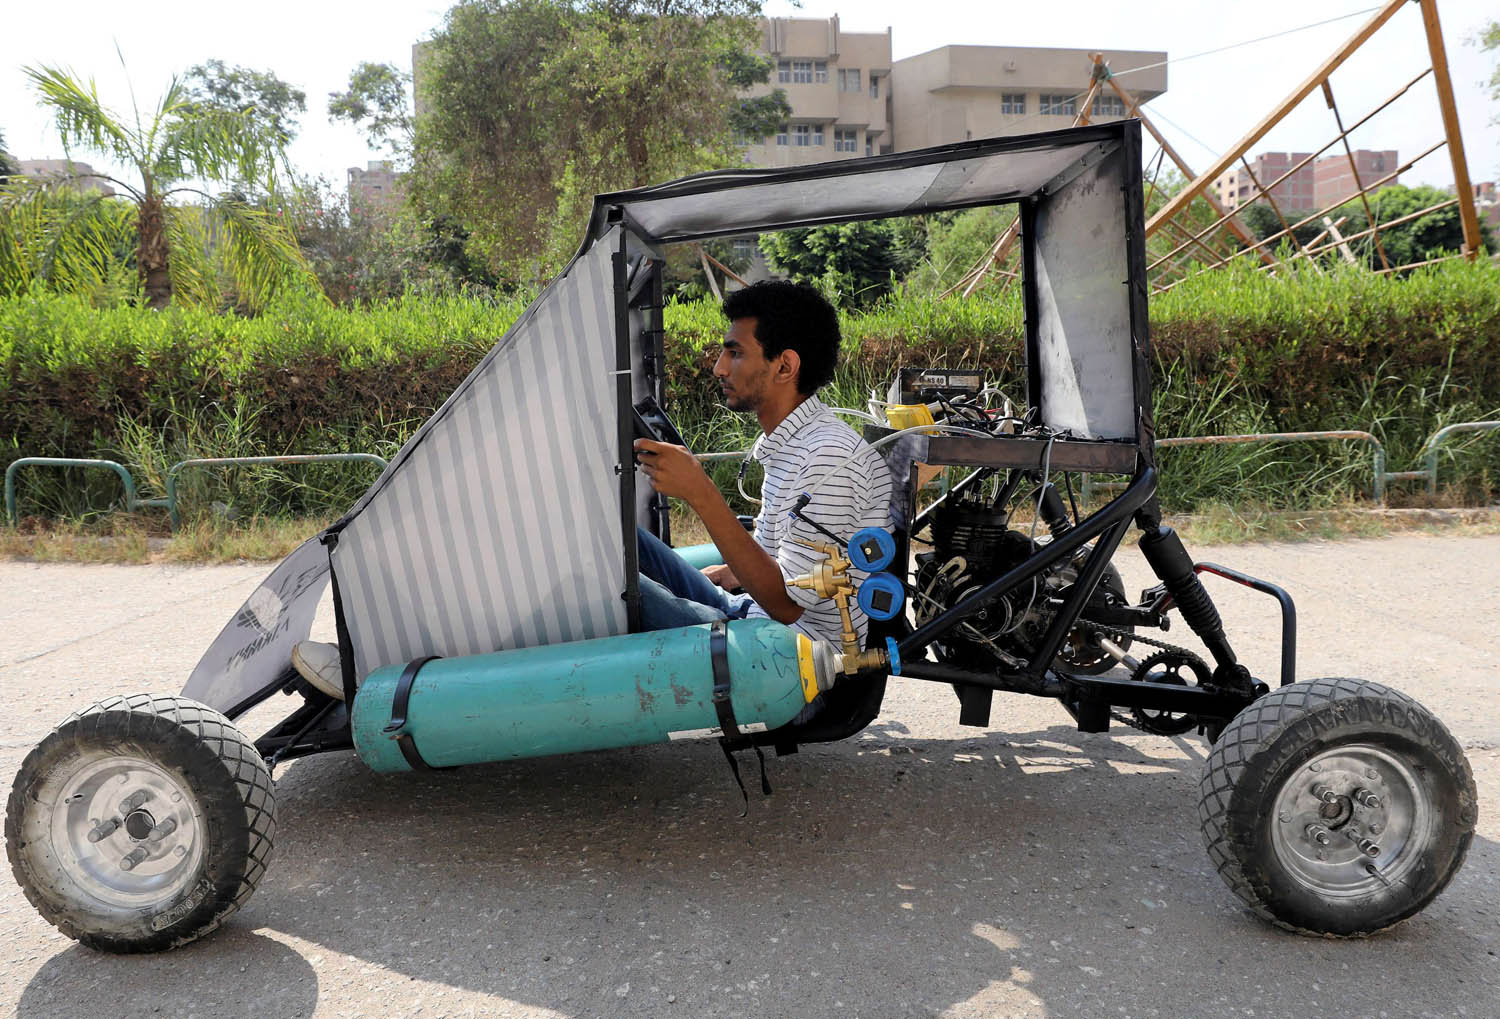 طالب من كلية الهندسة في جامعة حلوان يستعرض سيارة تعمل بالغاز قام بتصميمها وتنفيذها